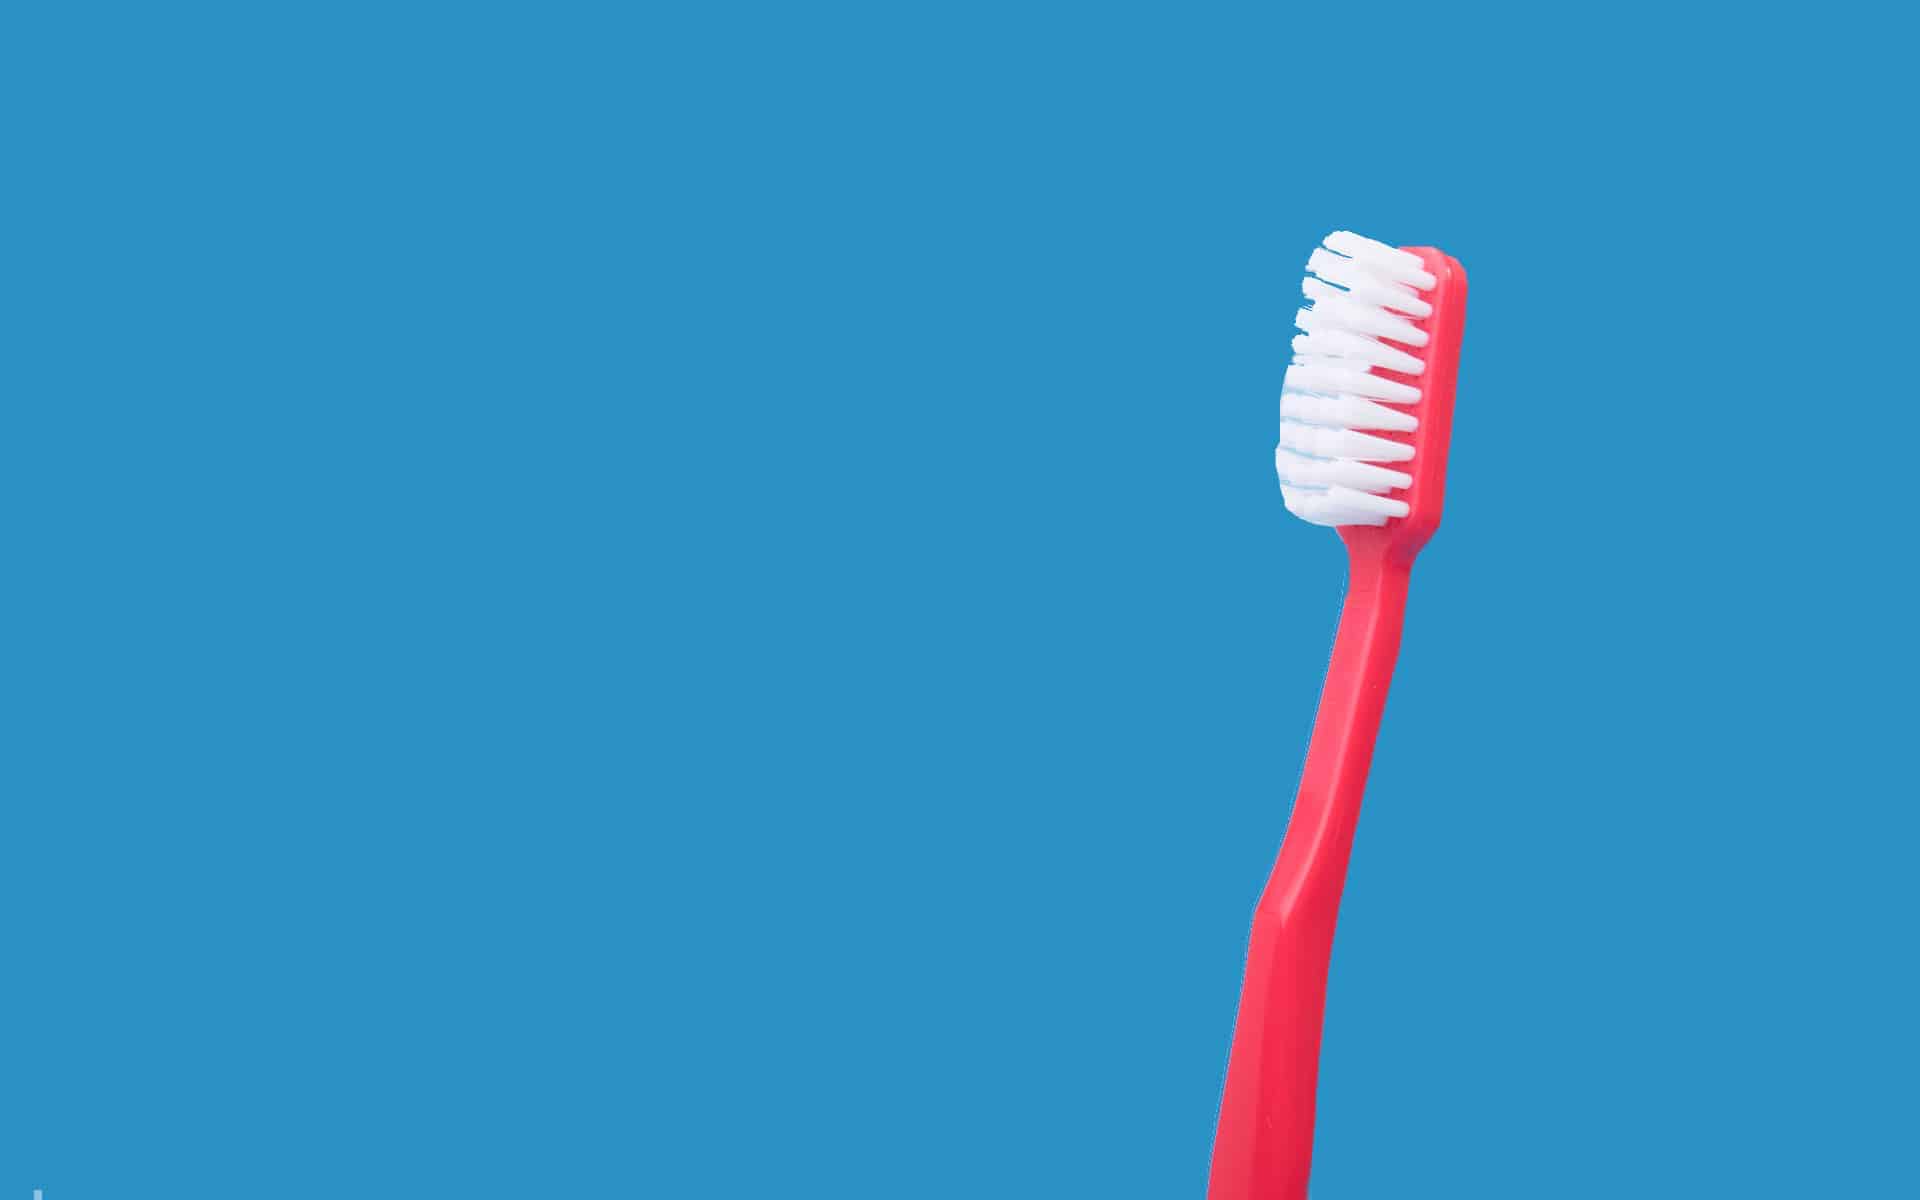 Cepillo de dientes en fondo azul.